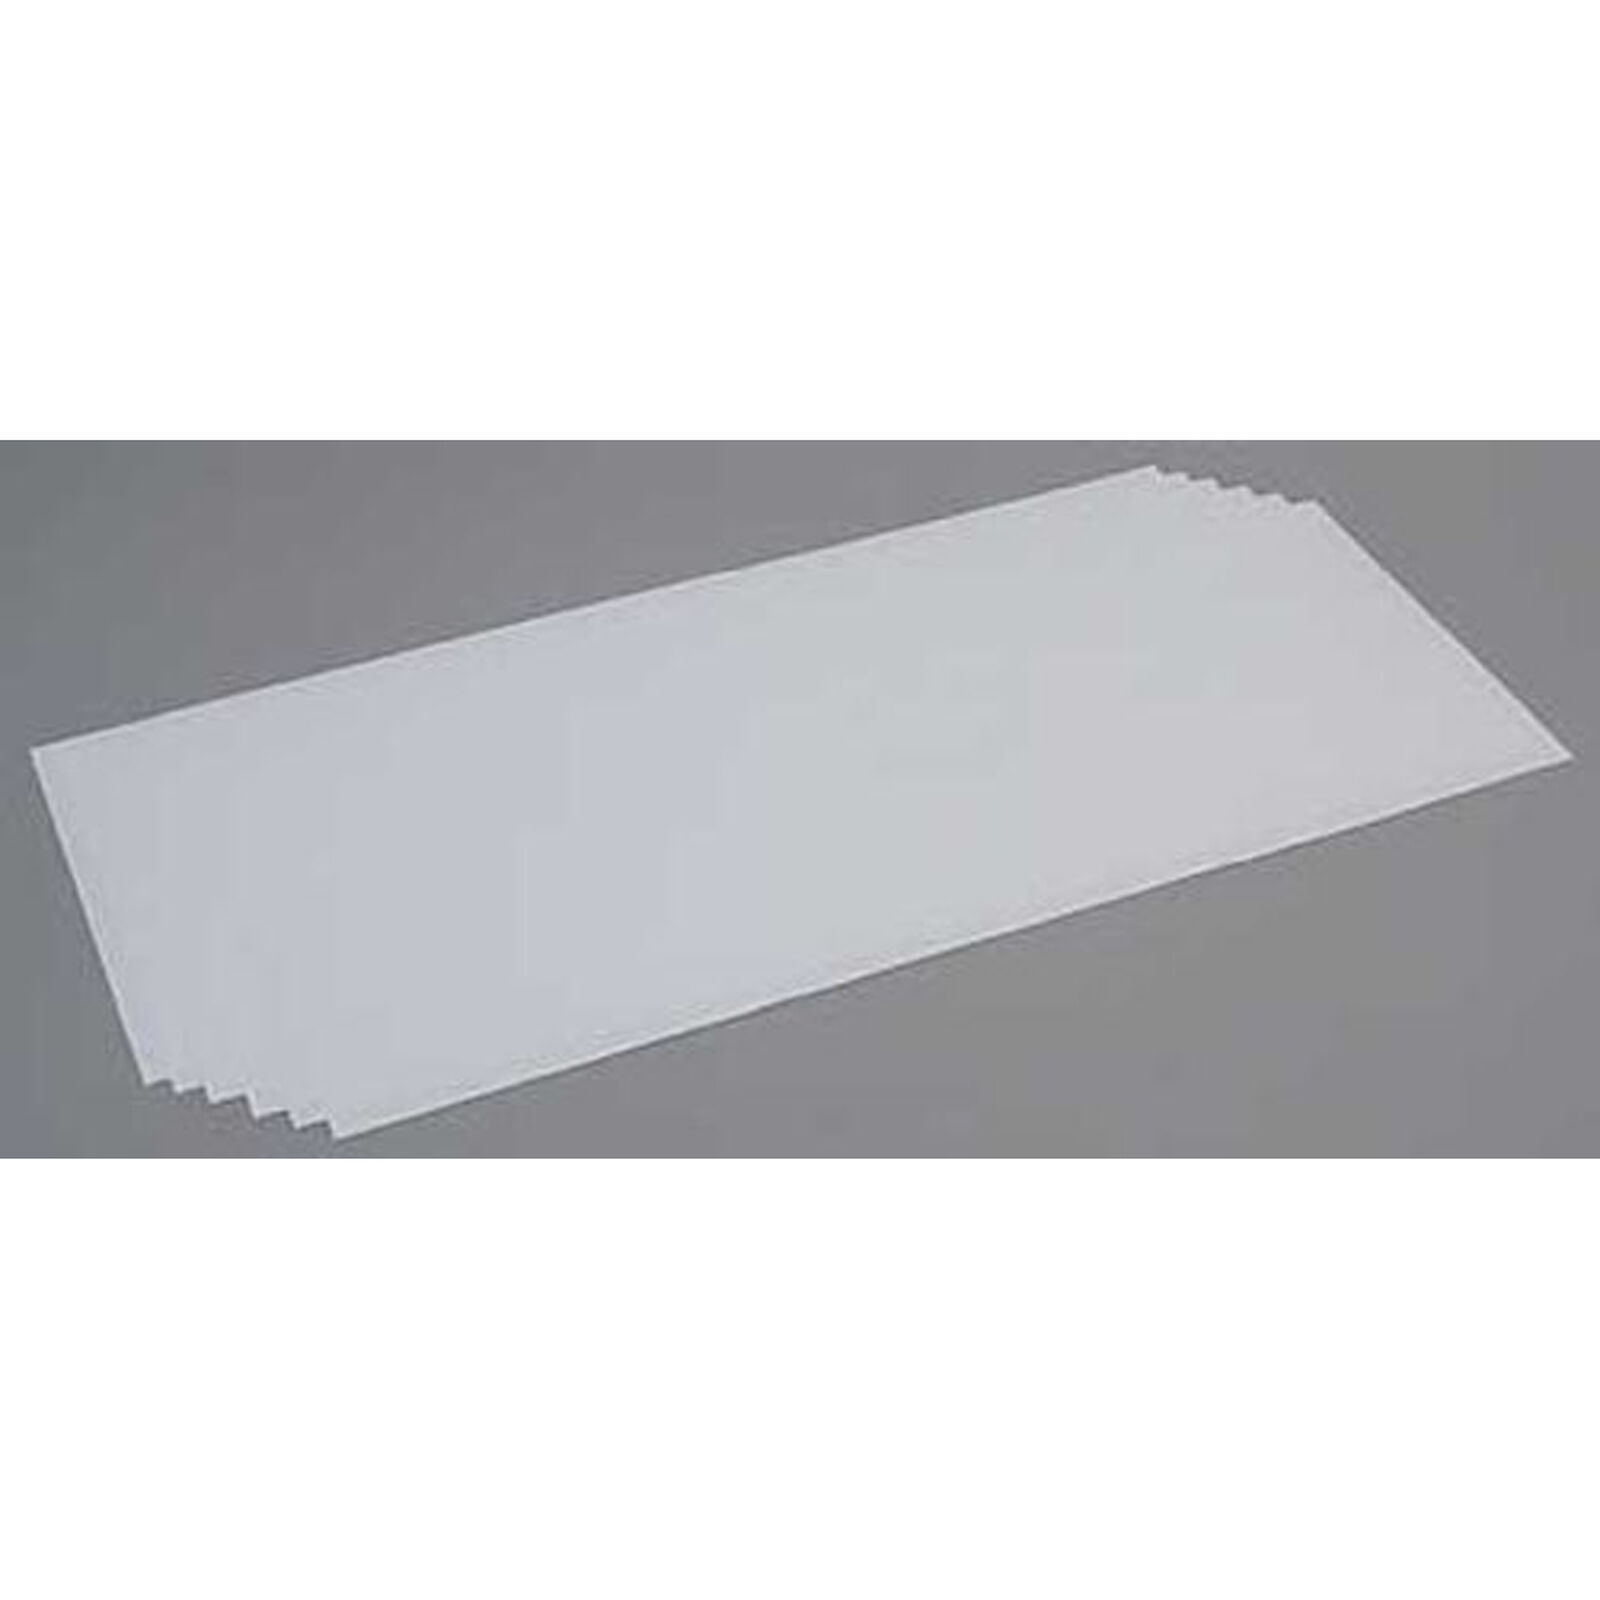 White Sheet .015 x 8 x 21 (6)